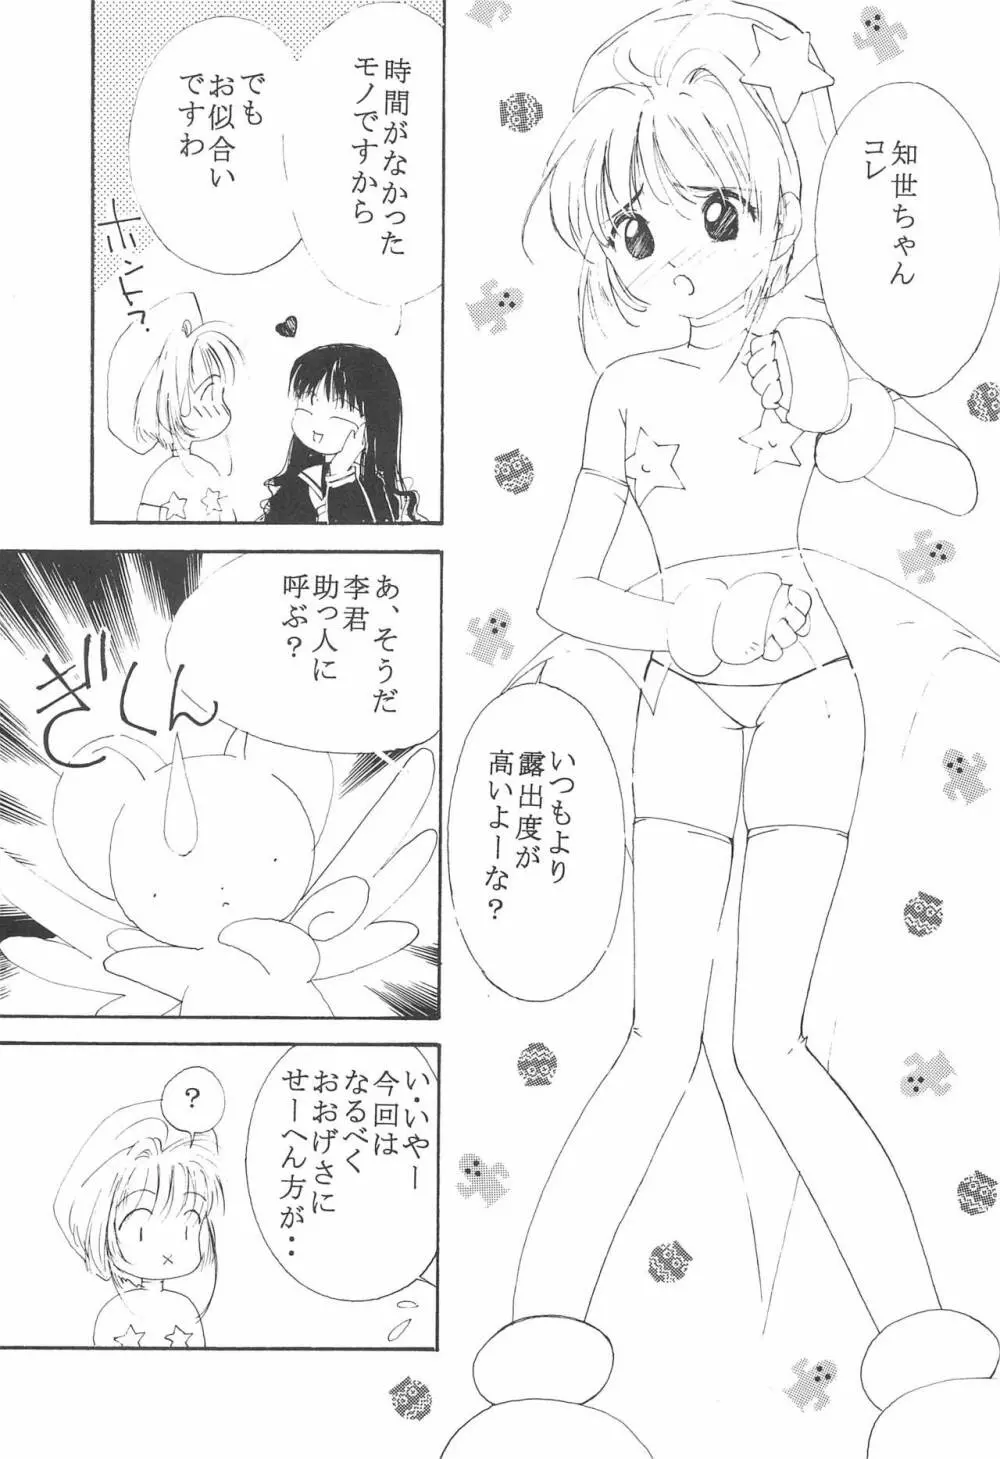 MoMo no Yu 8 7ページ